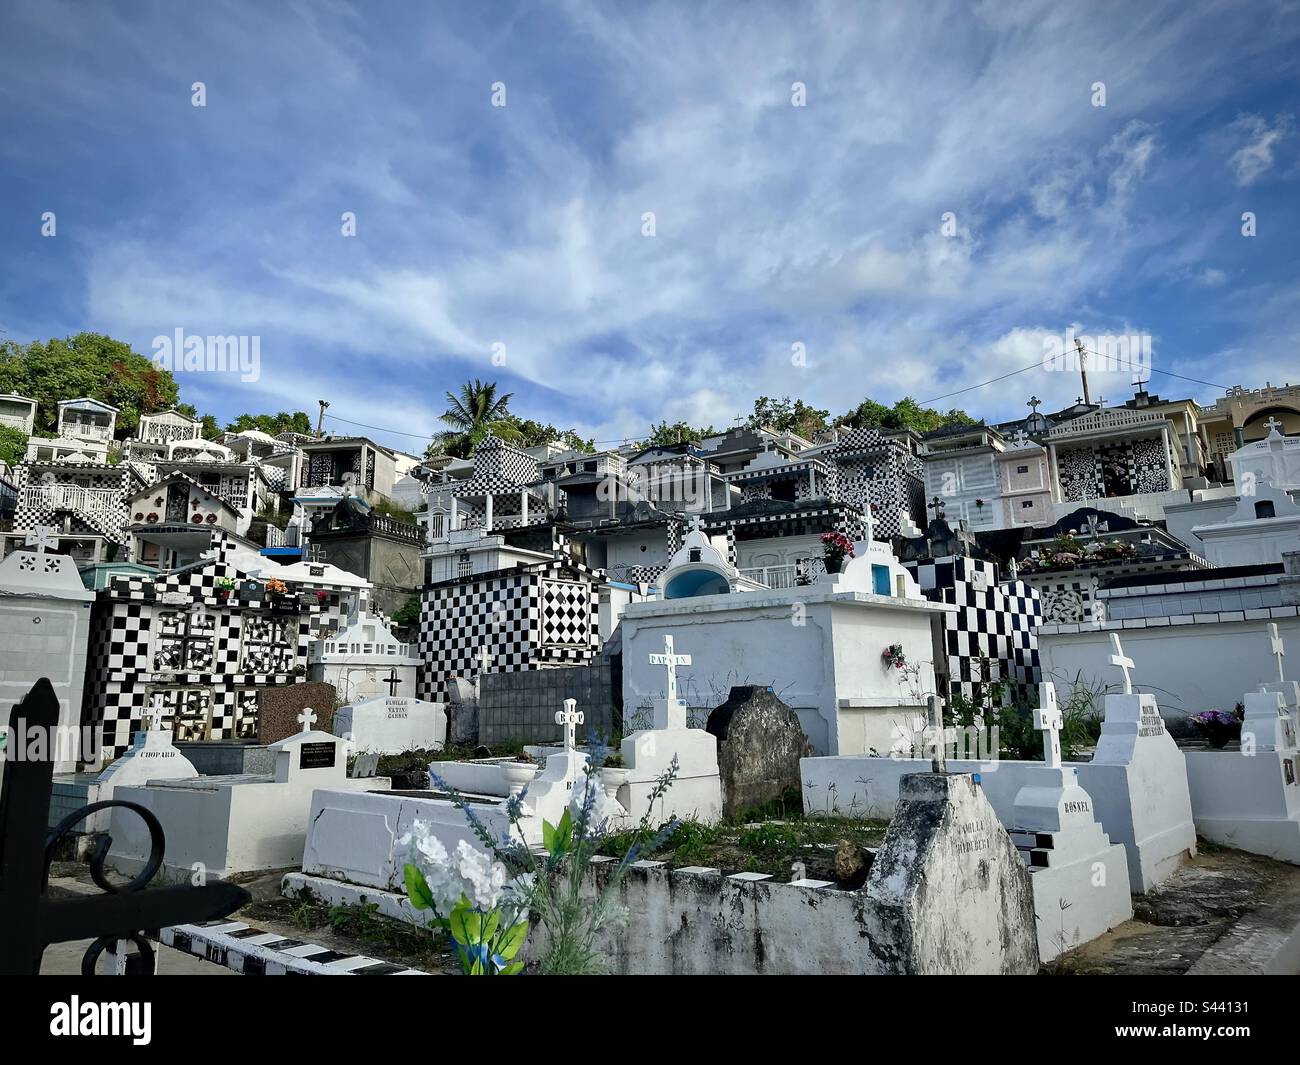 Vue sur un cimetière typique des Antilles françaises avec carreaux noirs et blancs. Photo prise en Guadeloupe en janvier 2023 Banque D'Images